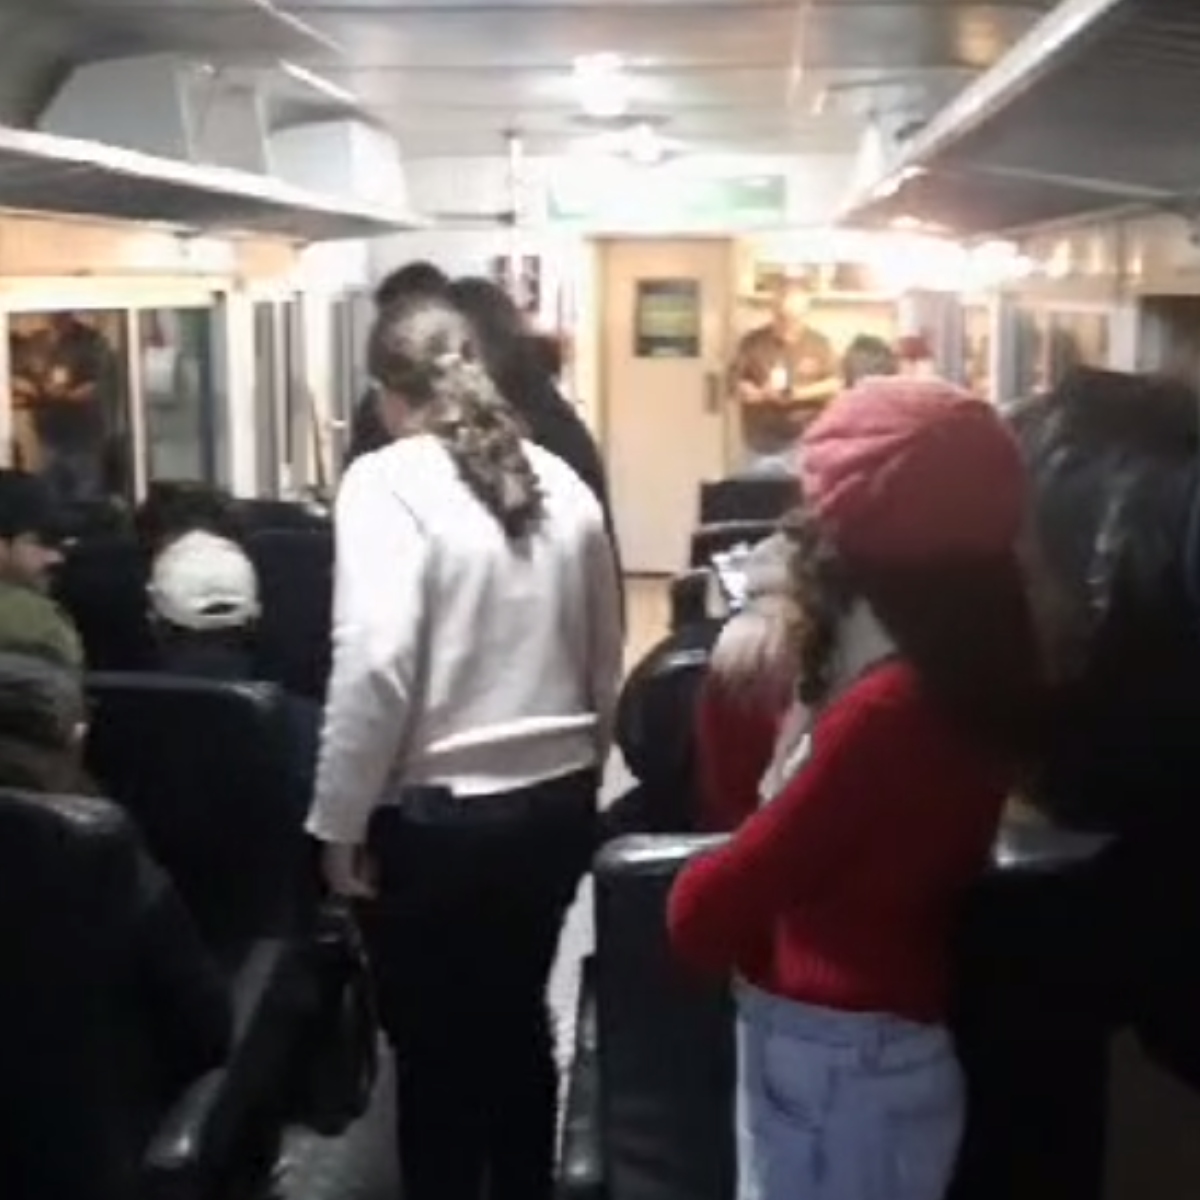  turistas presos em trem na serra do mar 